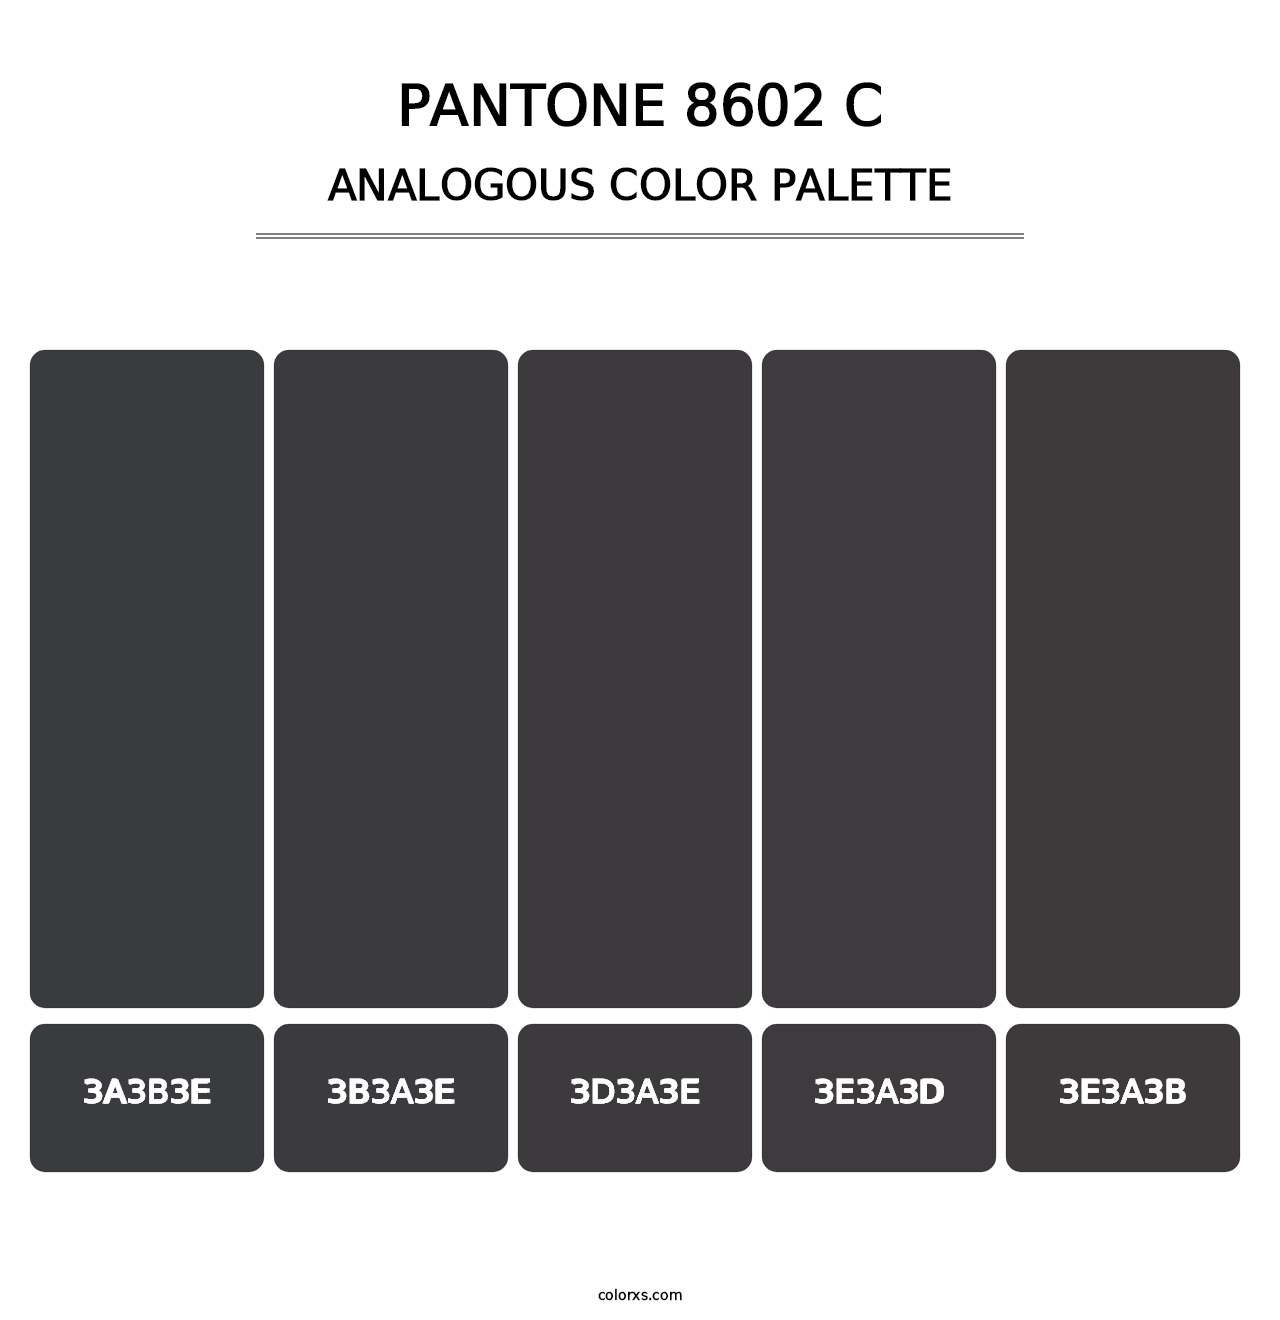 PANTONE 8602 C - Analogous Color Palette